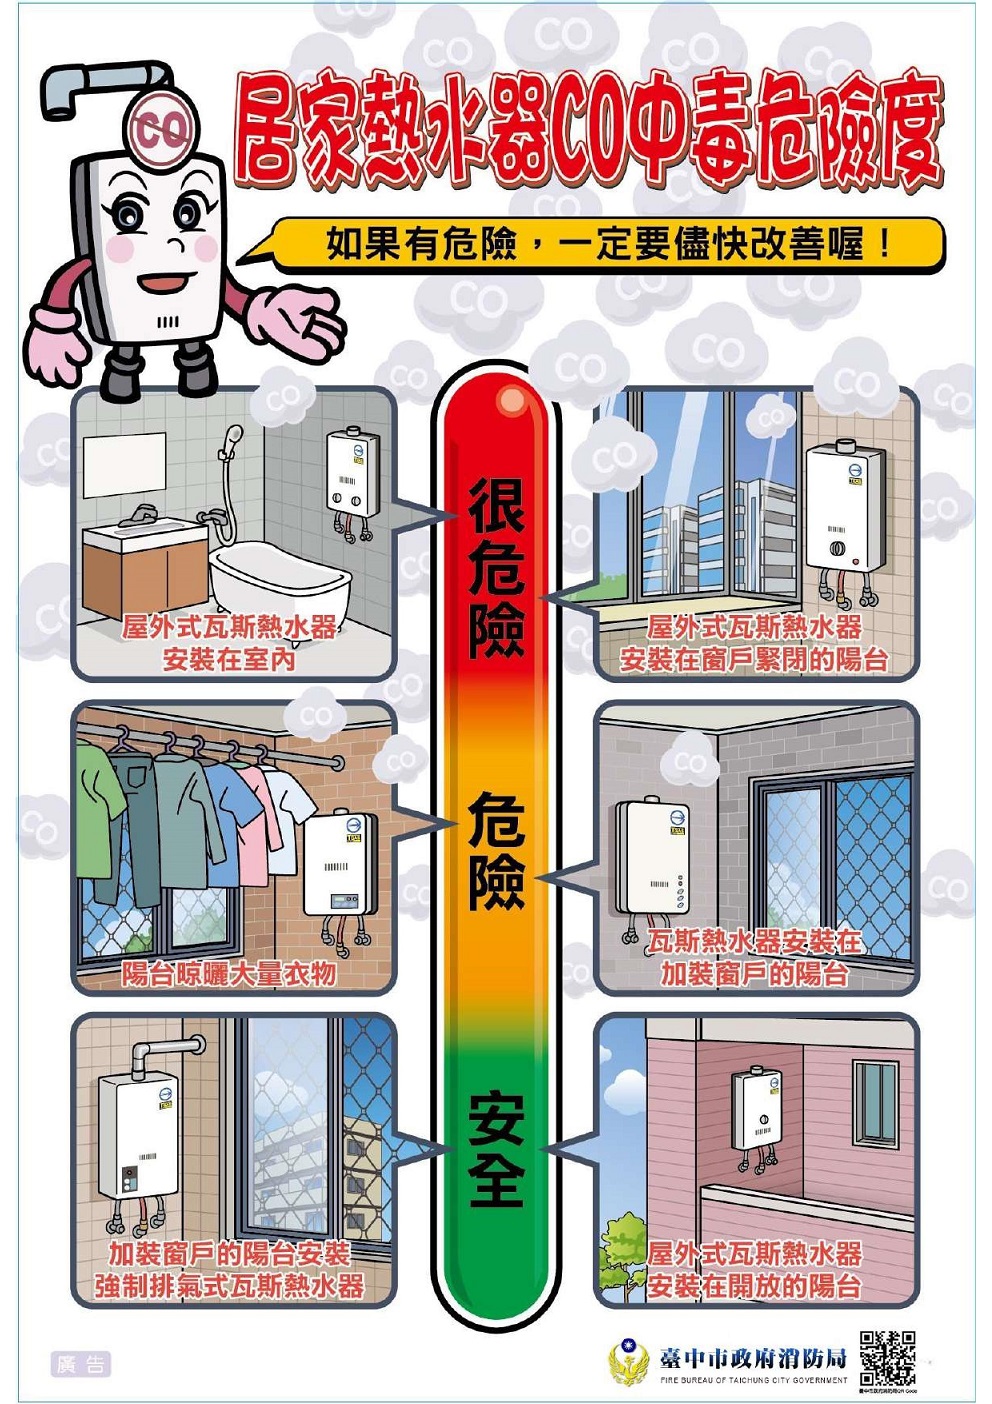 居家熱水器CO中毒危險度